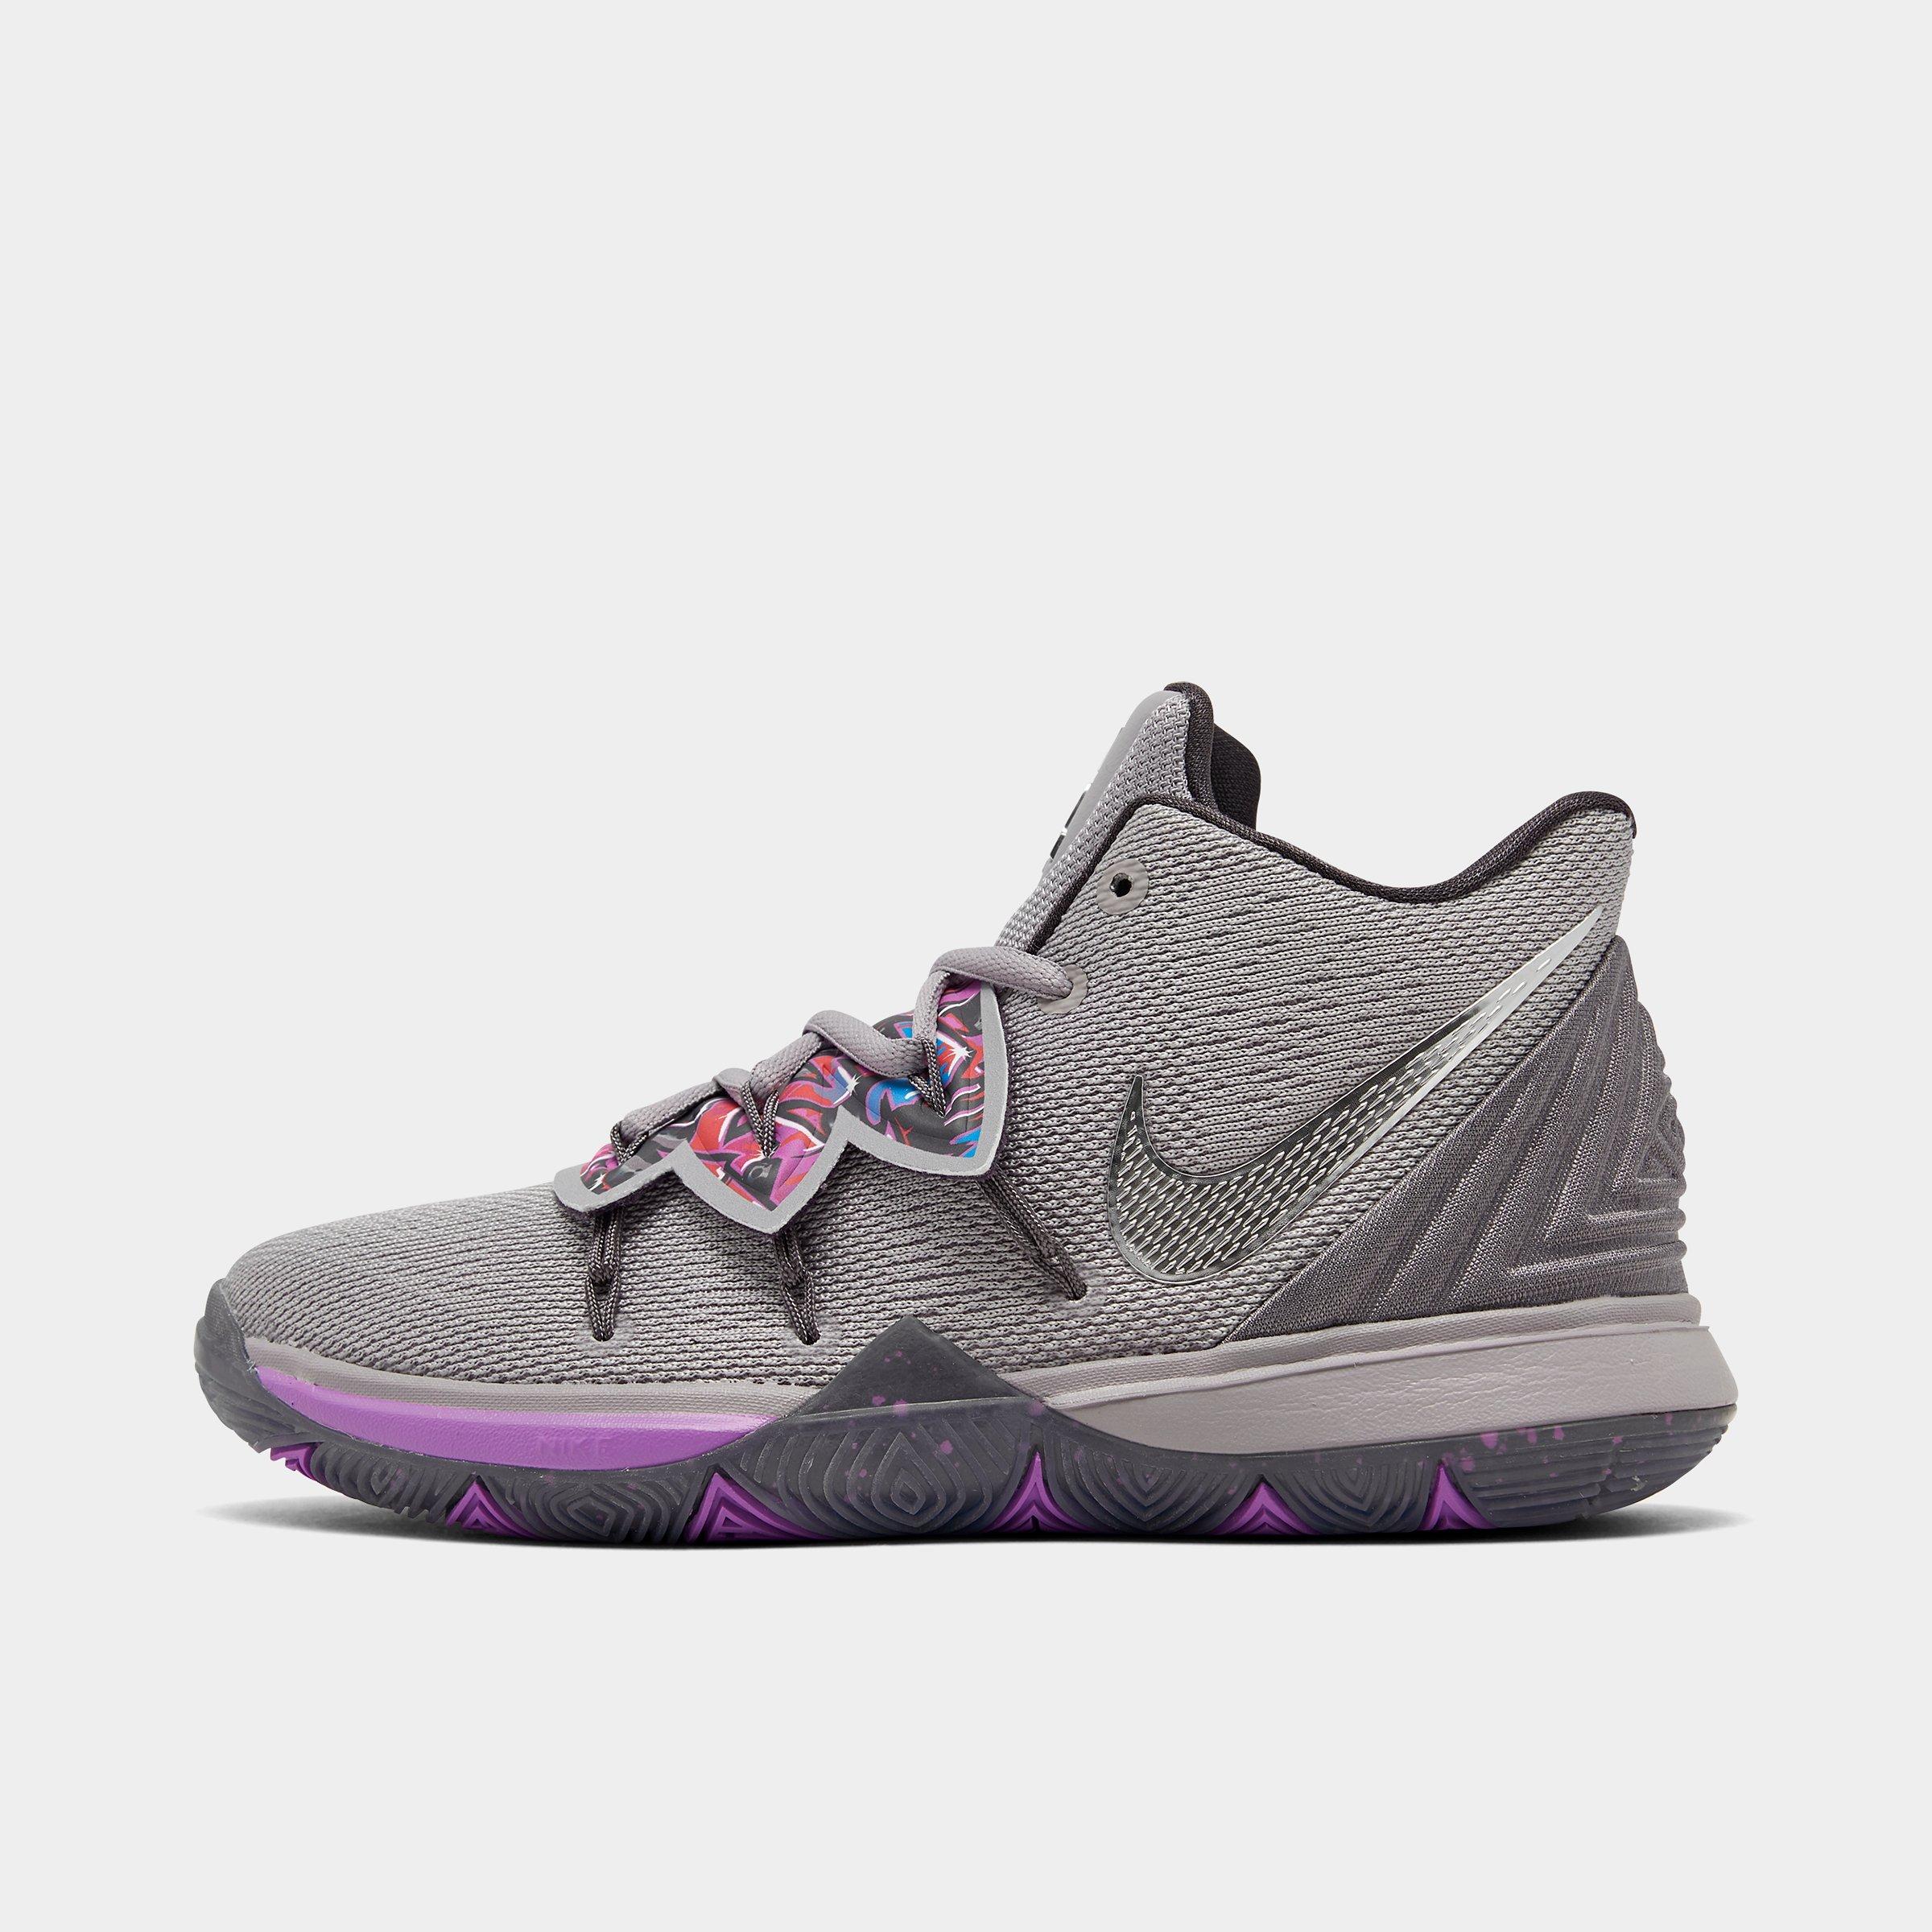 Concepts Nike Kyrie 5 Ikhet Release Date Sneaker Bar Detroit